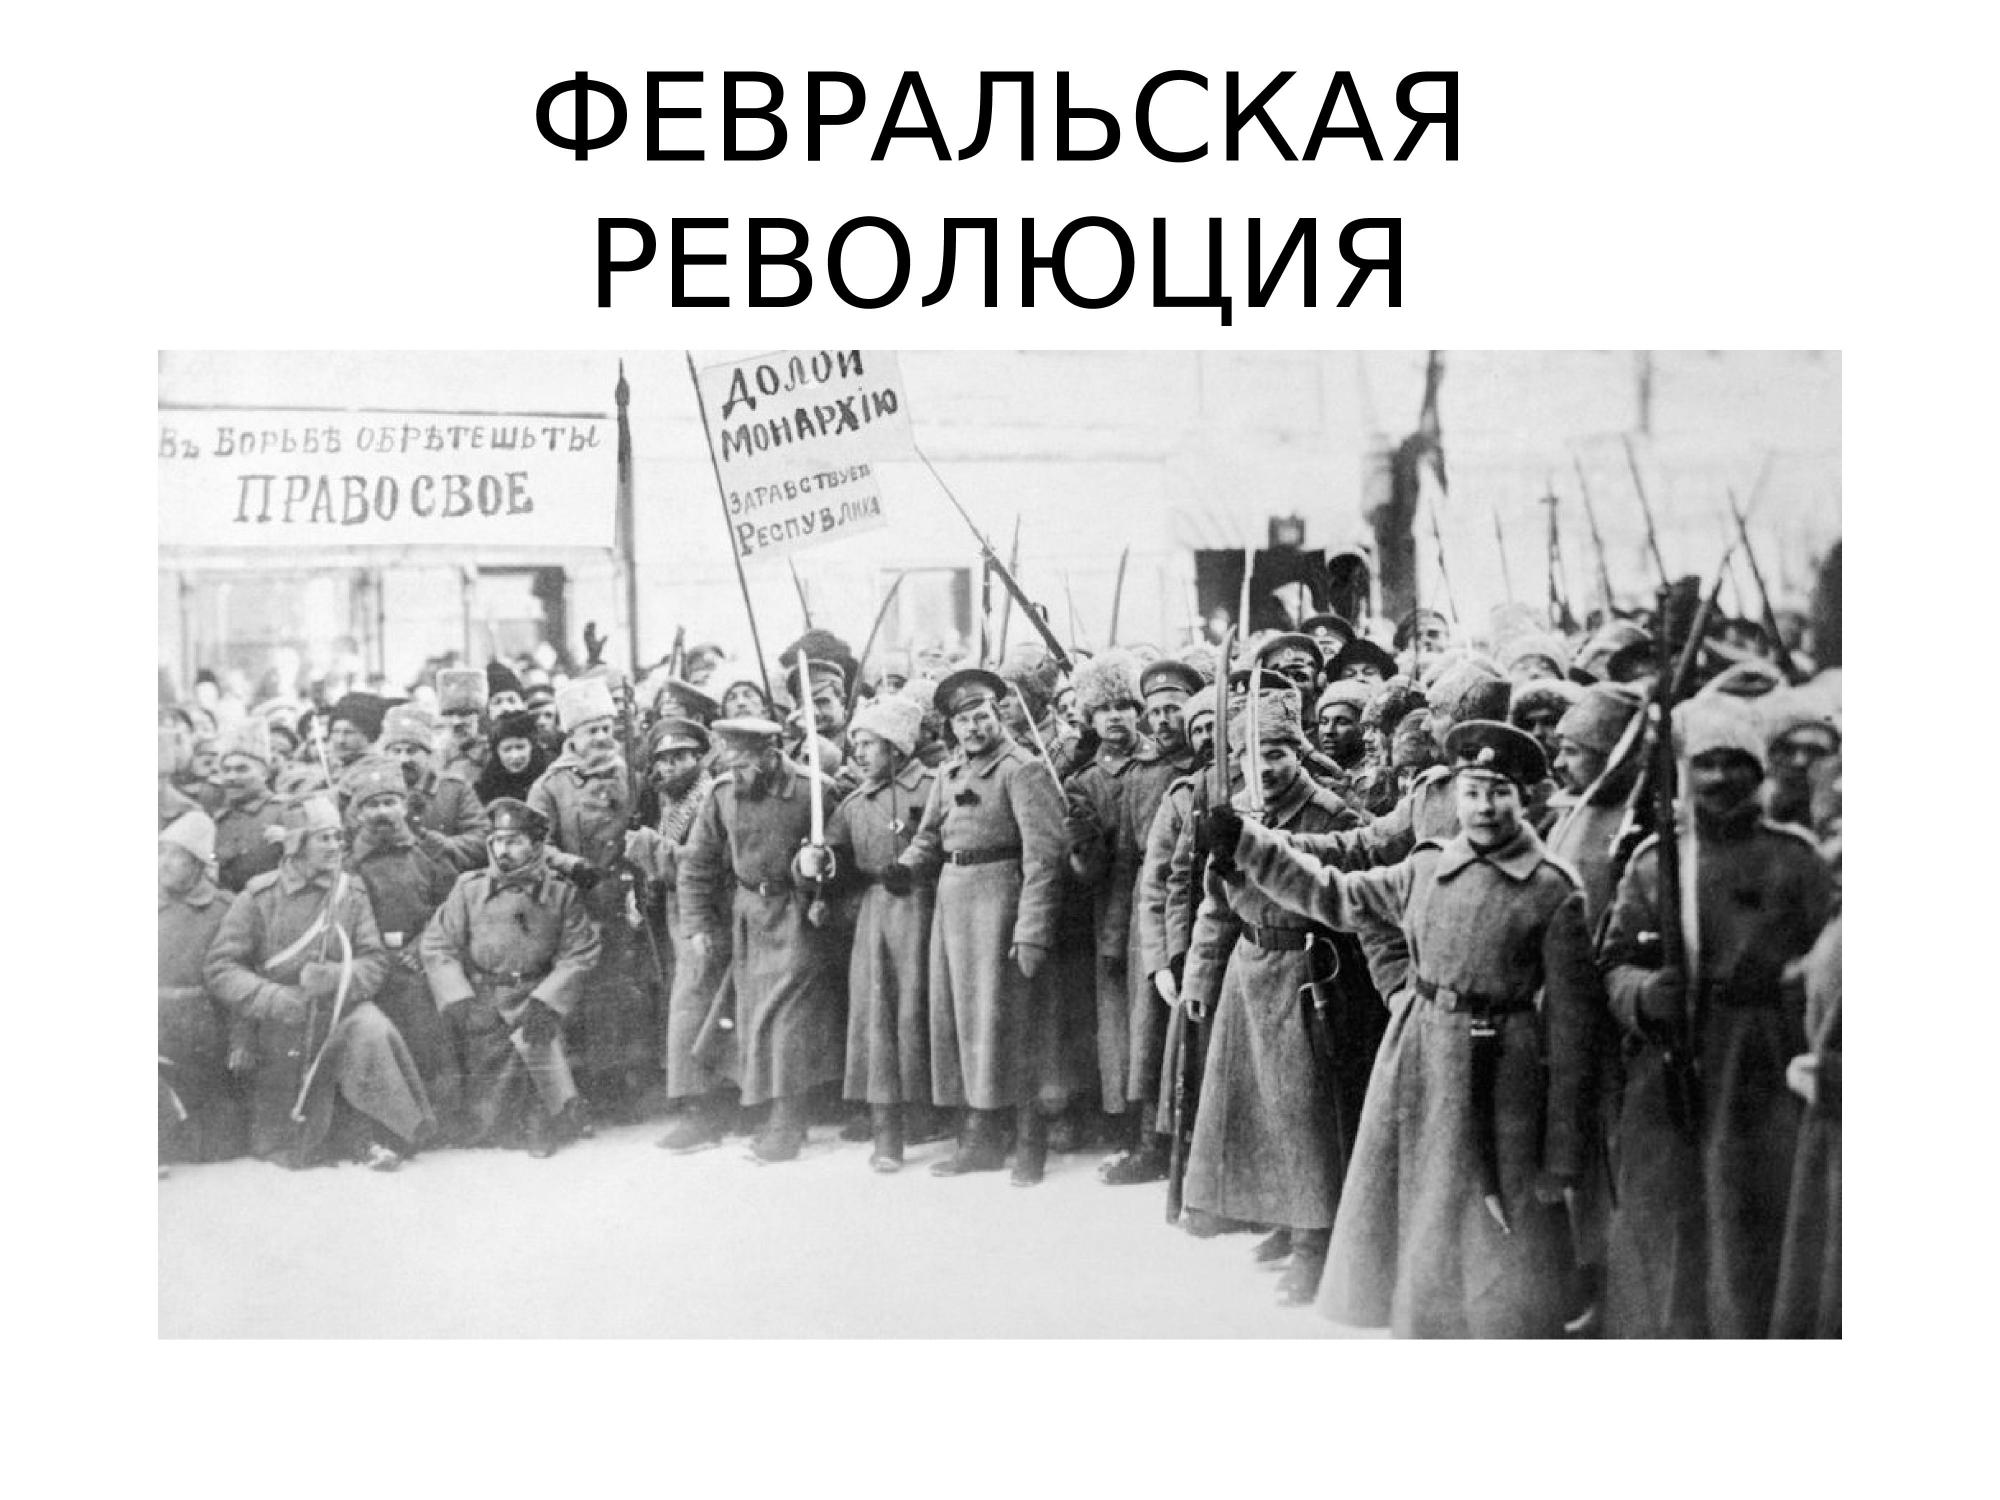 Февральская революция была неизбежна. 1917 Год – Февральская революция, отречение императора. Революция 23 февраля 1917 года в России. 23 Февраля 1917 года событие Февральская революция.